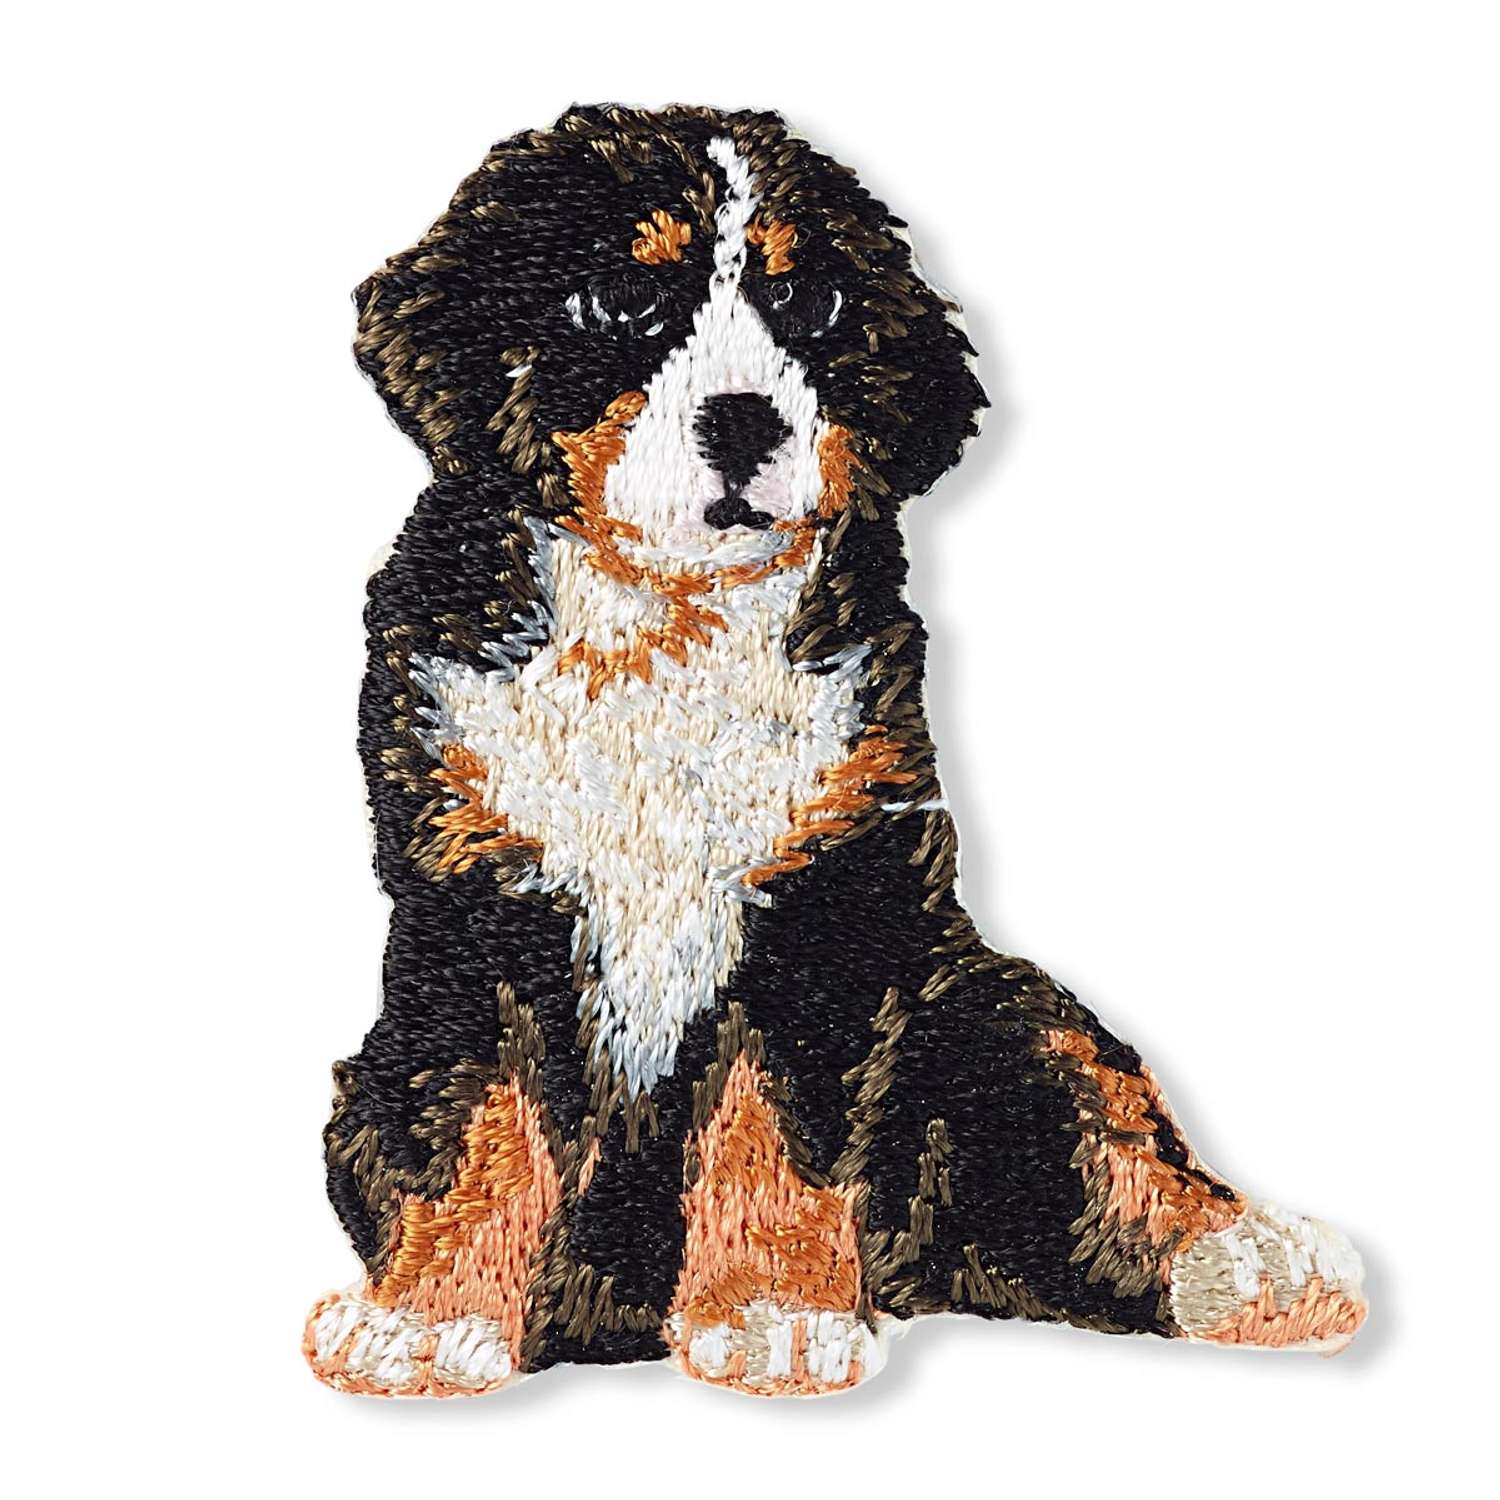 Термоаппликация Prym нашивка Альпийская собака 5.5х4.4 см для ремонта и украшения одежды 925578 - фото 7